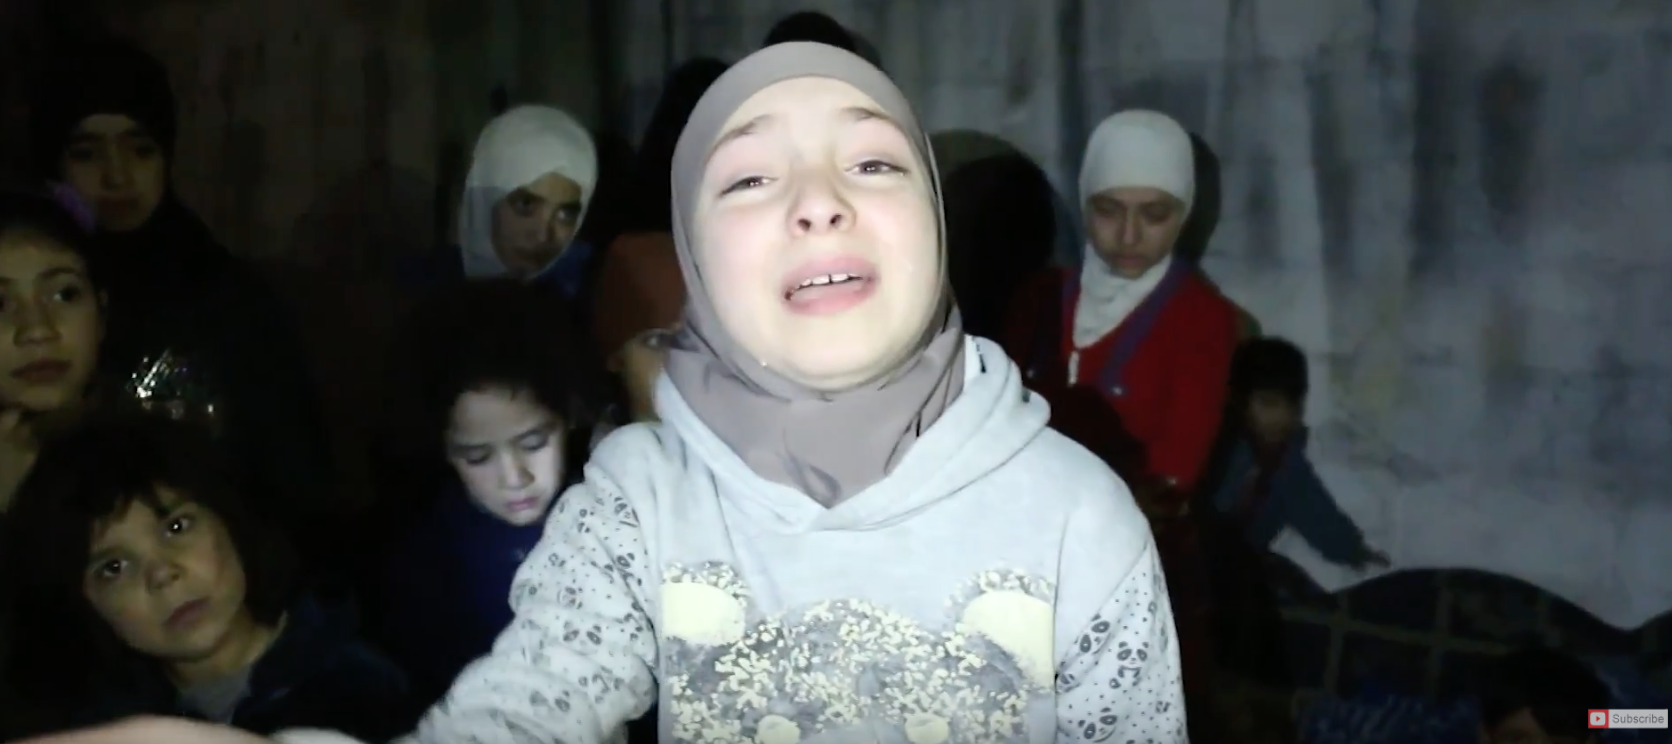 طفلة الغوطة "سندس" التي ظهرت أمام الكاميرا من أحد الملاجئ وهي تصرخ في وجه العالم